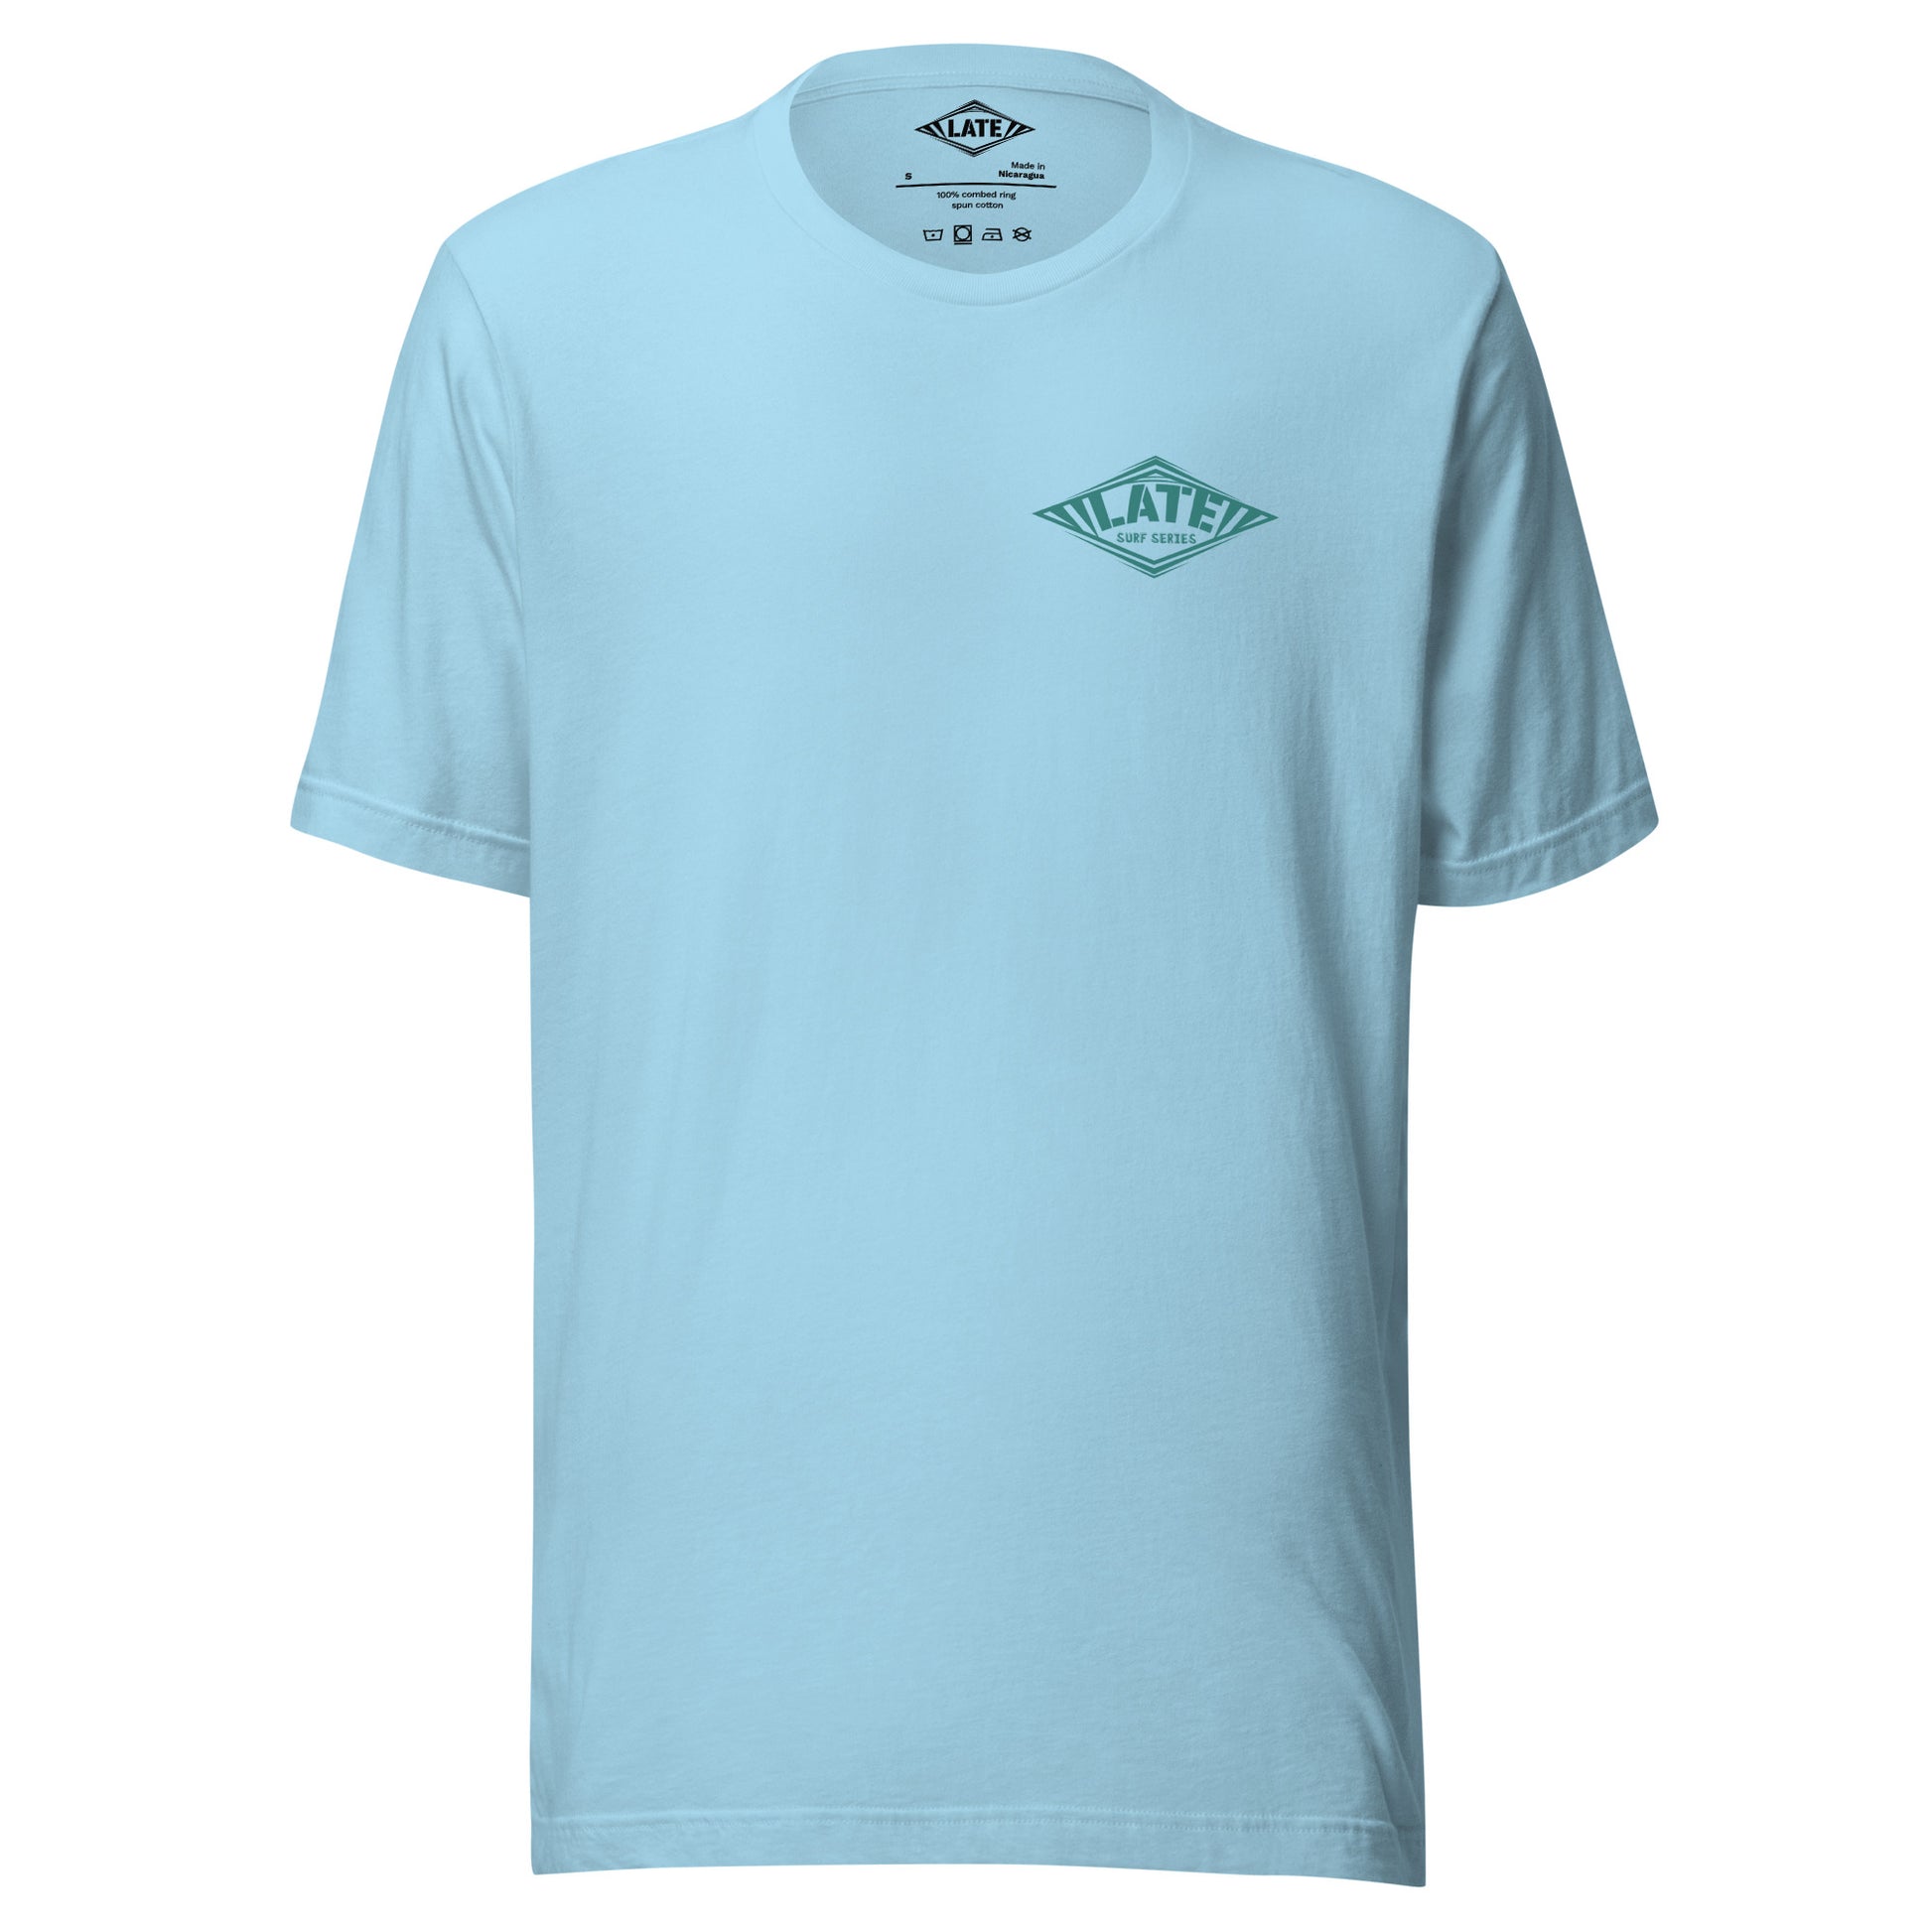 T-Shirt surfing avec Logo Late et texte surf series face et couleur bleu océan